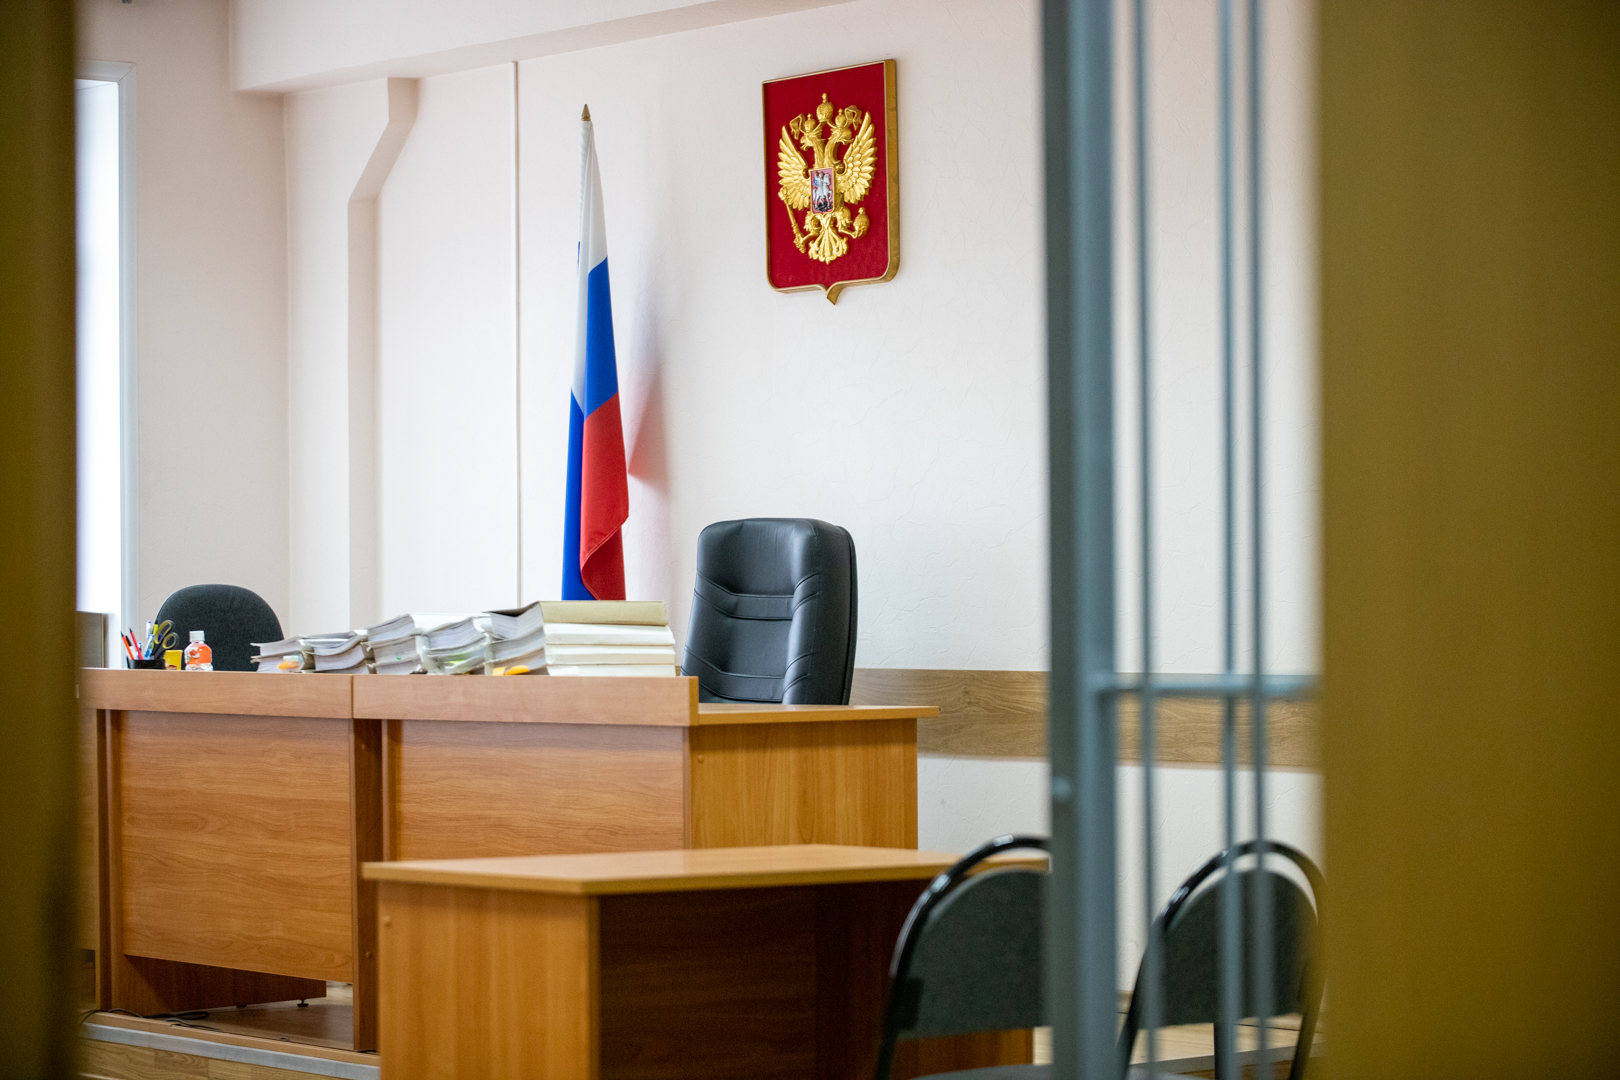 Туляка обязали заплатить 20 тысяч рублей штрафа за оскорбление представителя власти